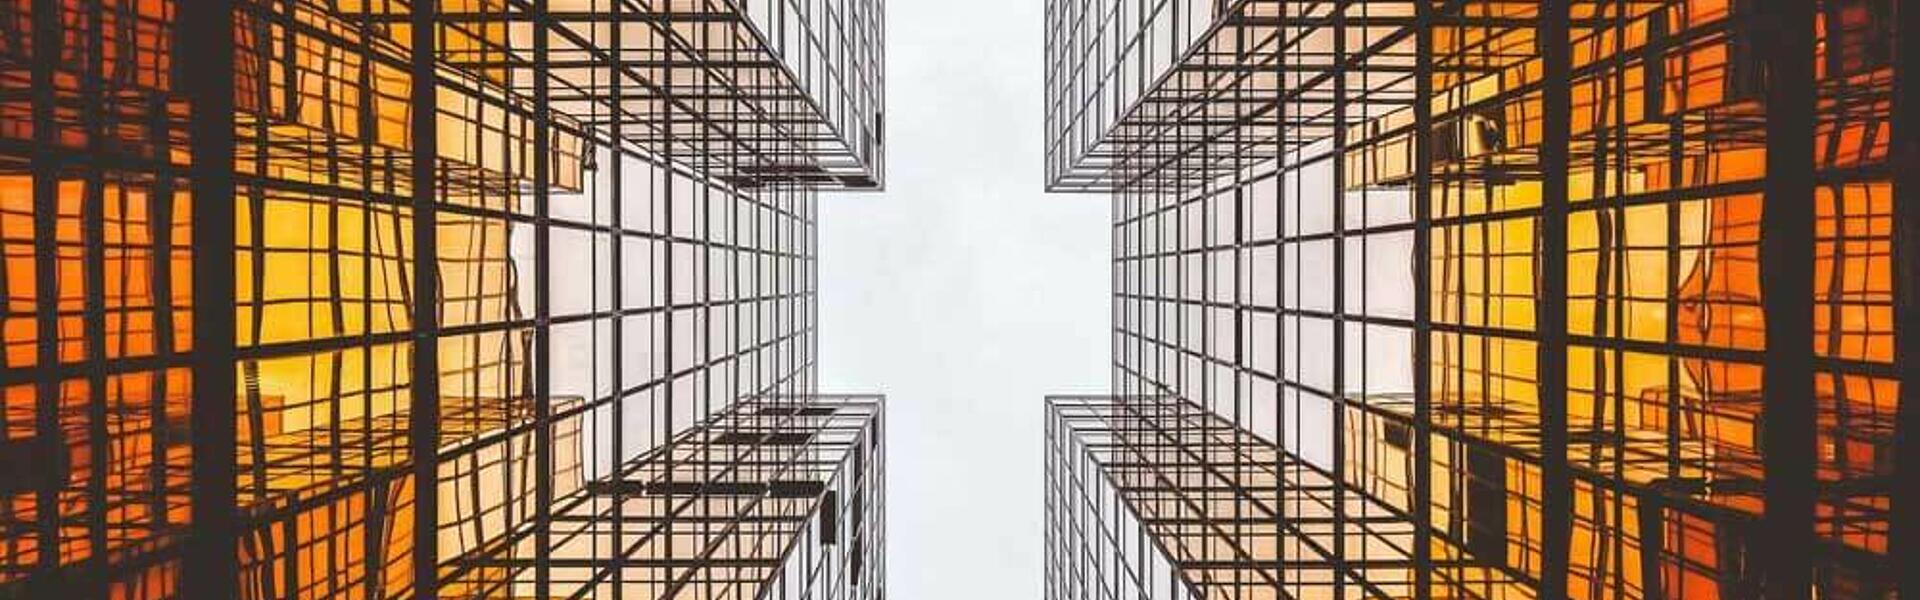 Incoming Invoices Konzern Versicherungskammer Mirroring Skyscrapers